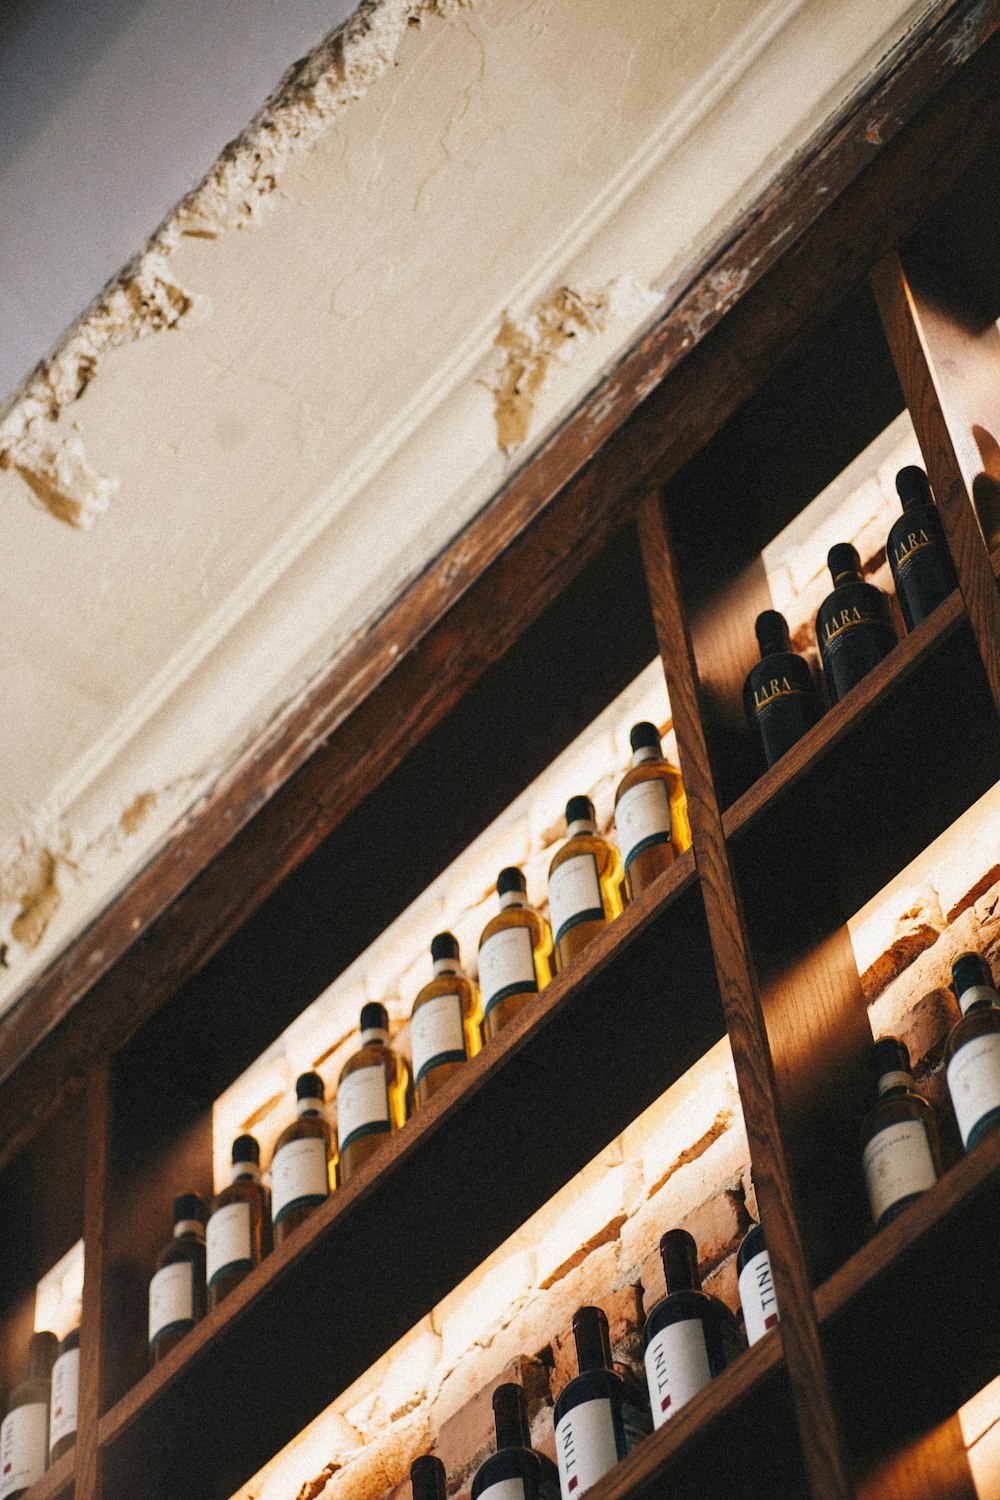 Botellas en estante de madera marrón